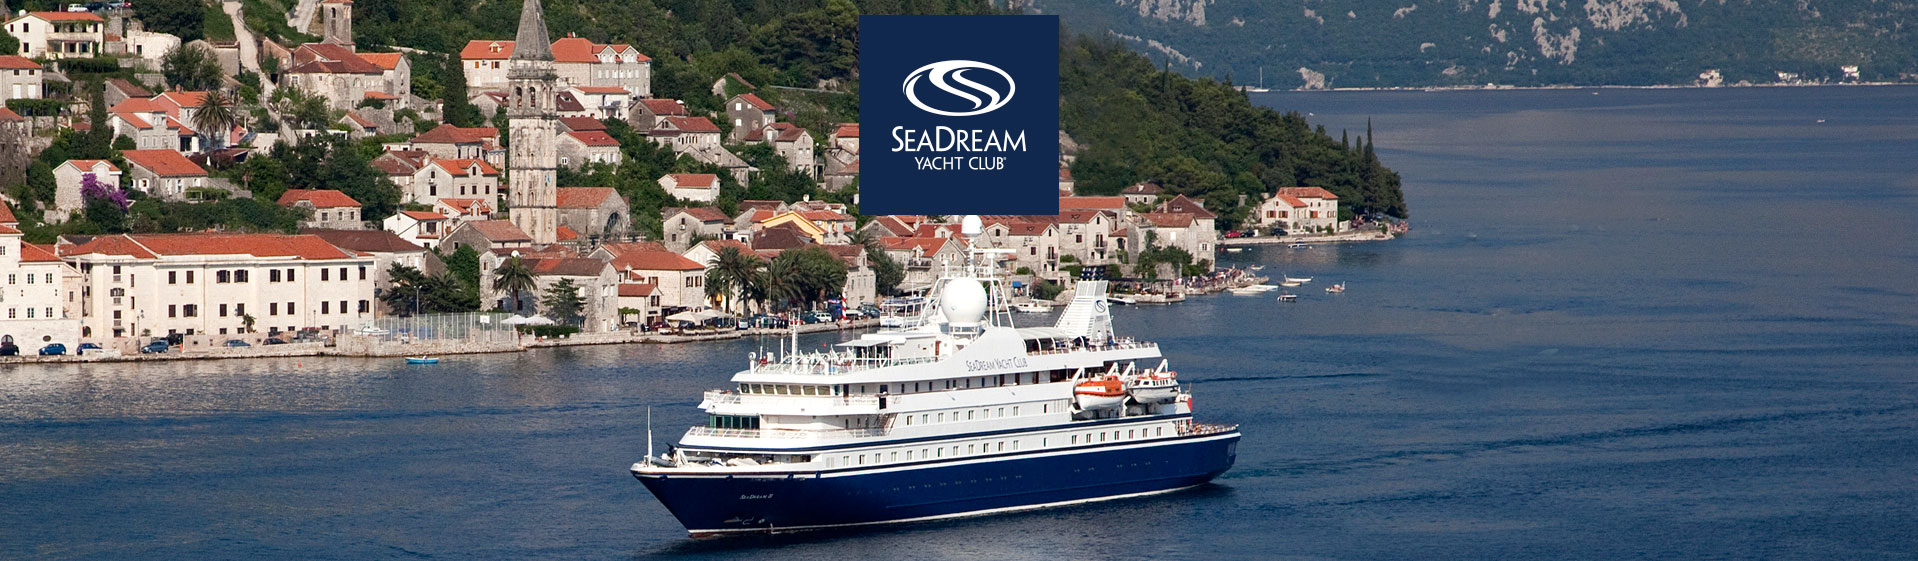 Seadream Yacht Club